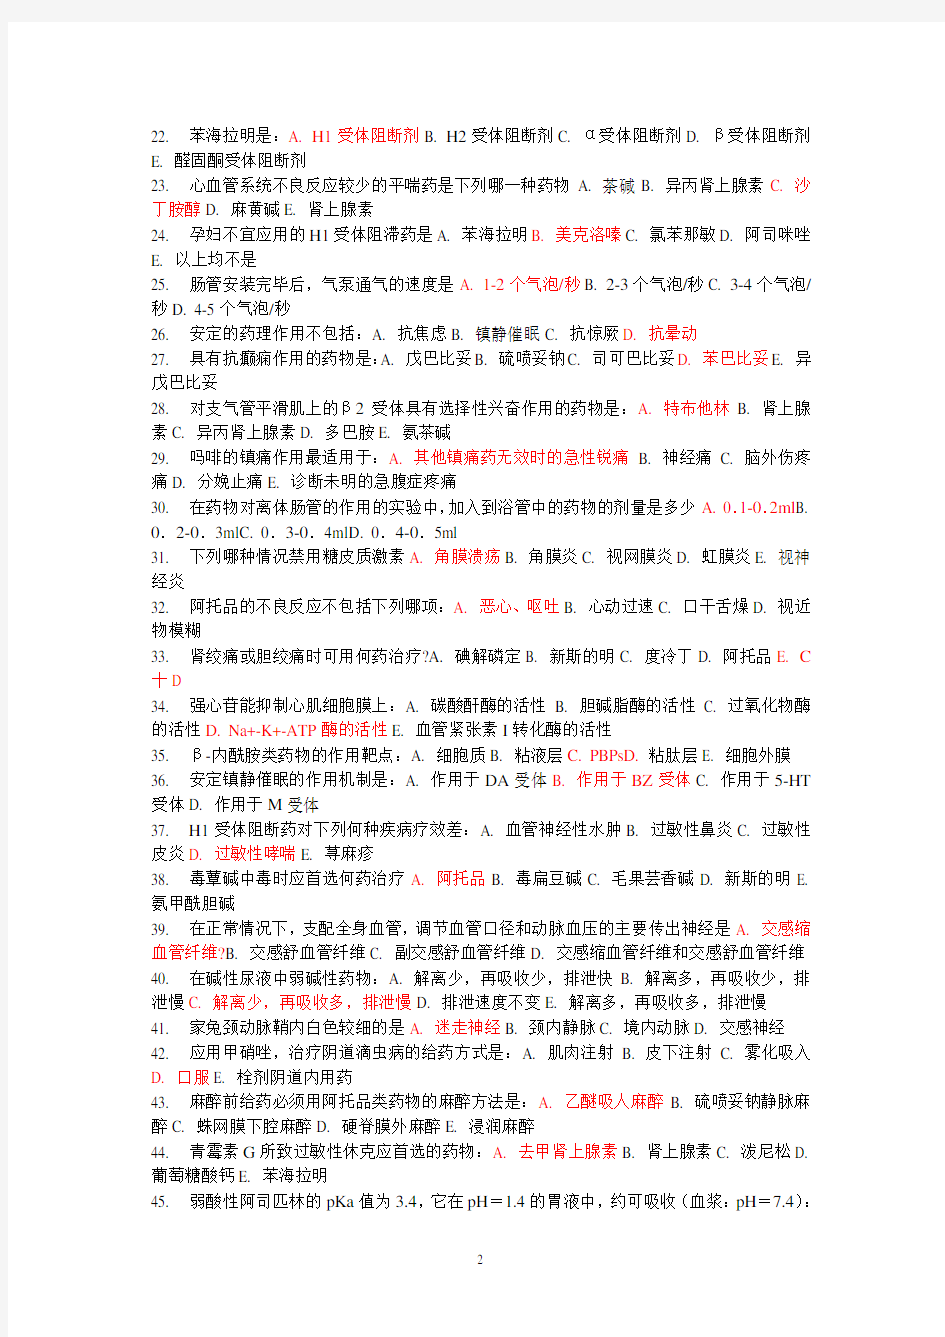 中国医科大学《药理学(本科)》在线作业答案(2020年整理).pdf